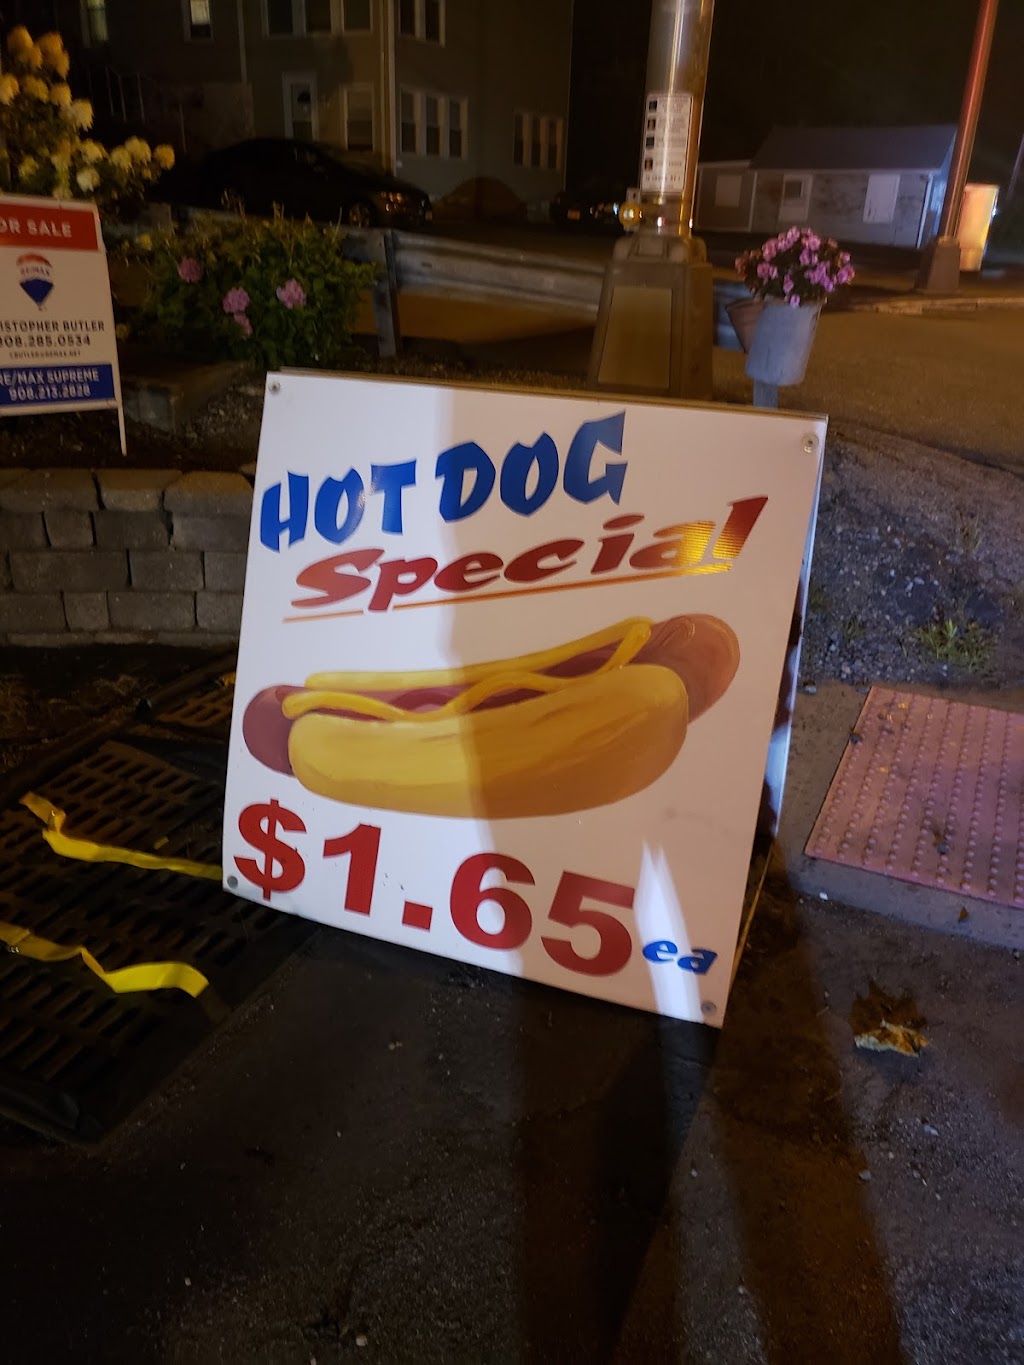 Hot Rods Hot Dogs | 2113 NJ-31, Glen Gardner, NJ 08826 | Phone: (908) 537-7022